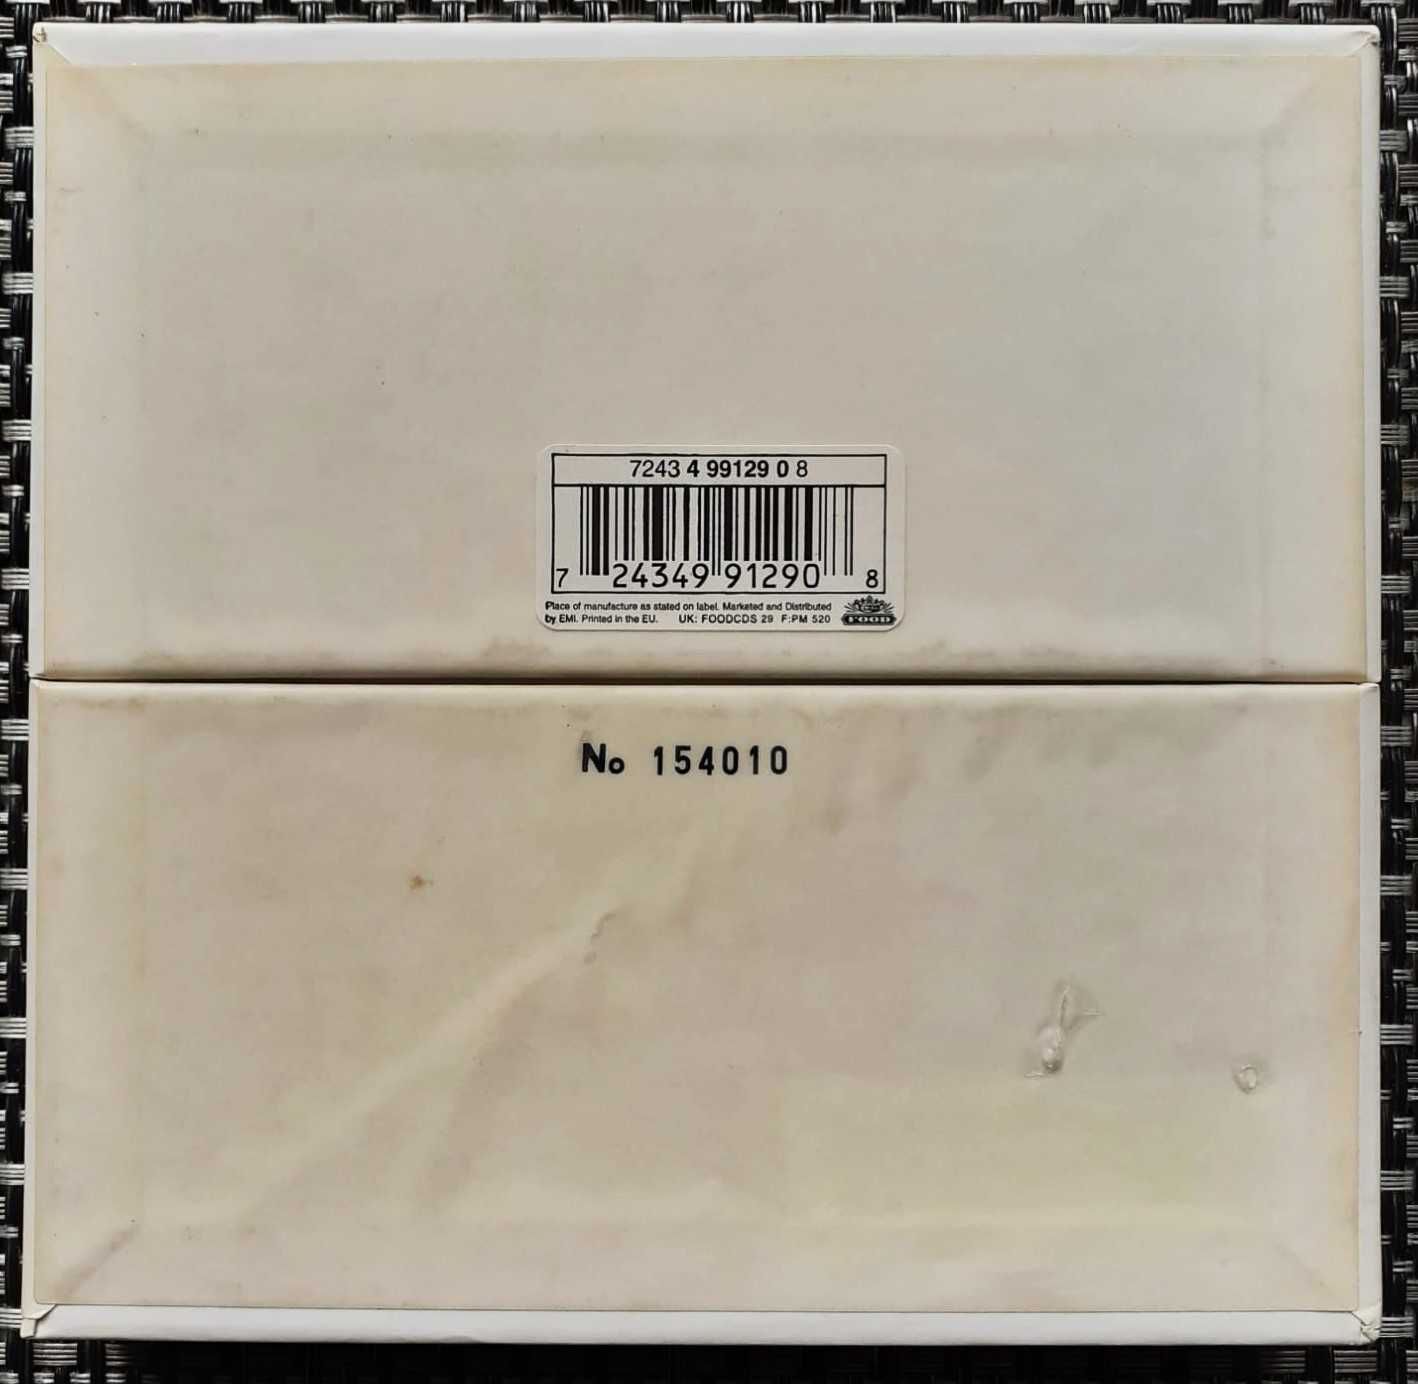 Blur - 13 - CD - Box Set - Ed. Limitada Numerada - Muito Bom Estado